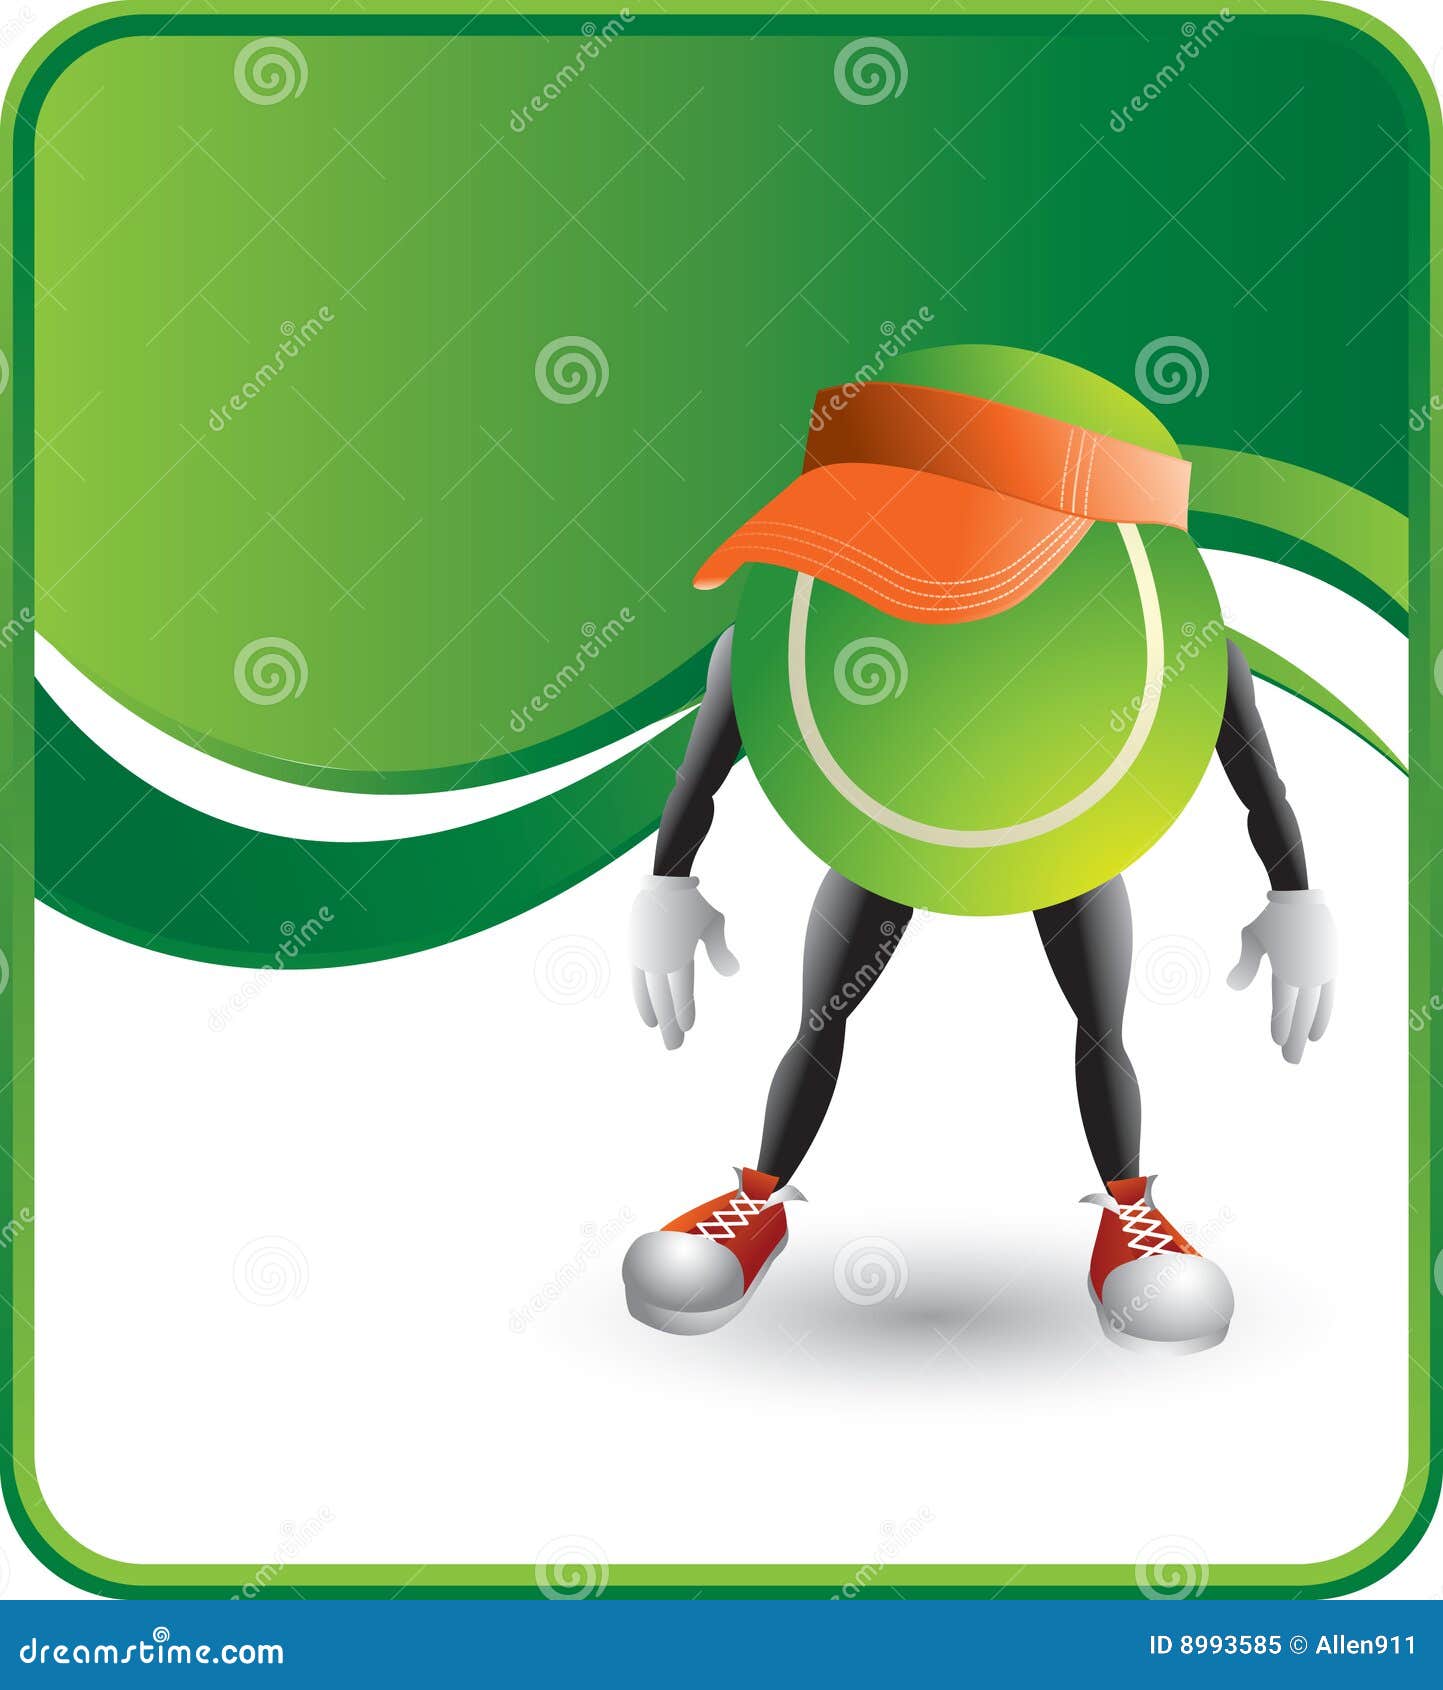 tennis ball cartoon character wearing a visor